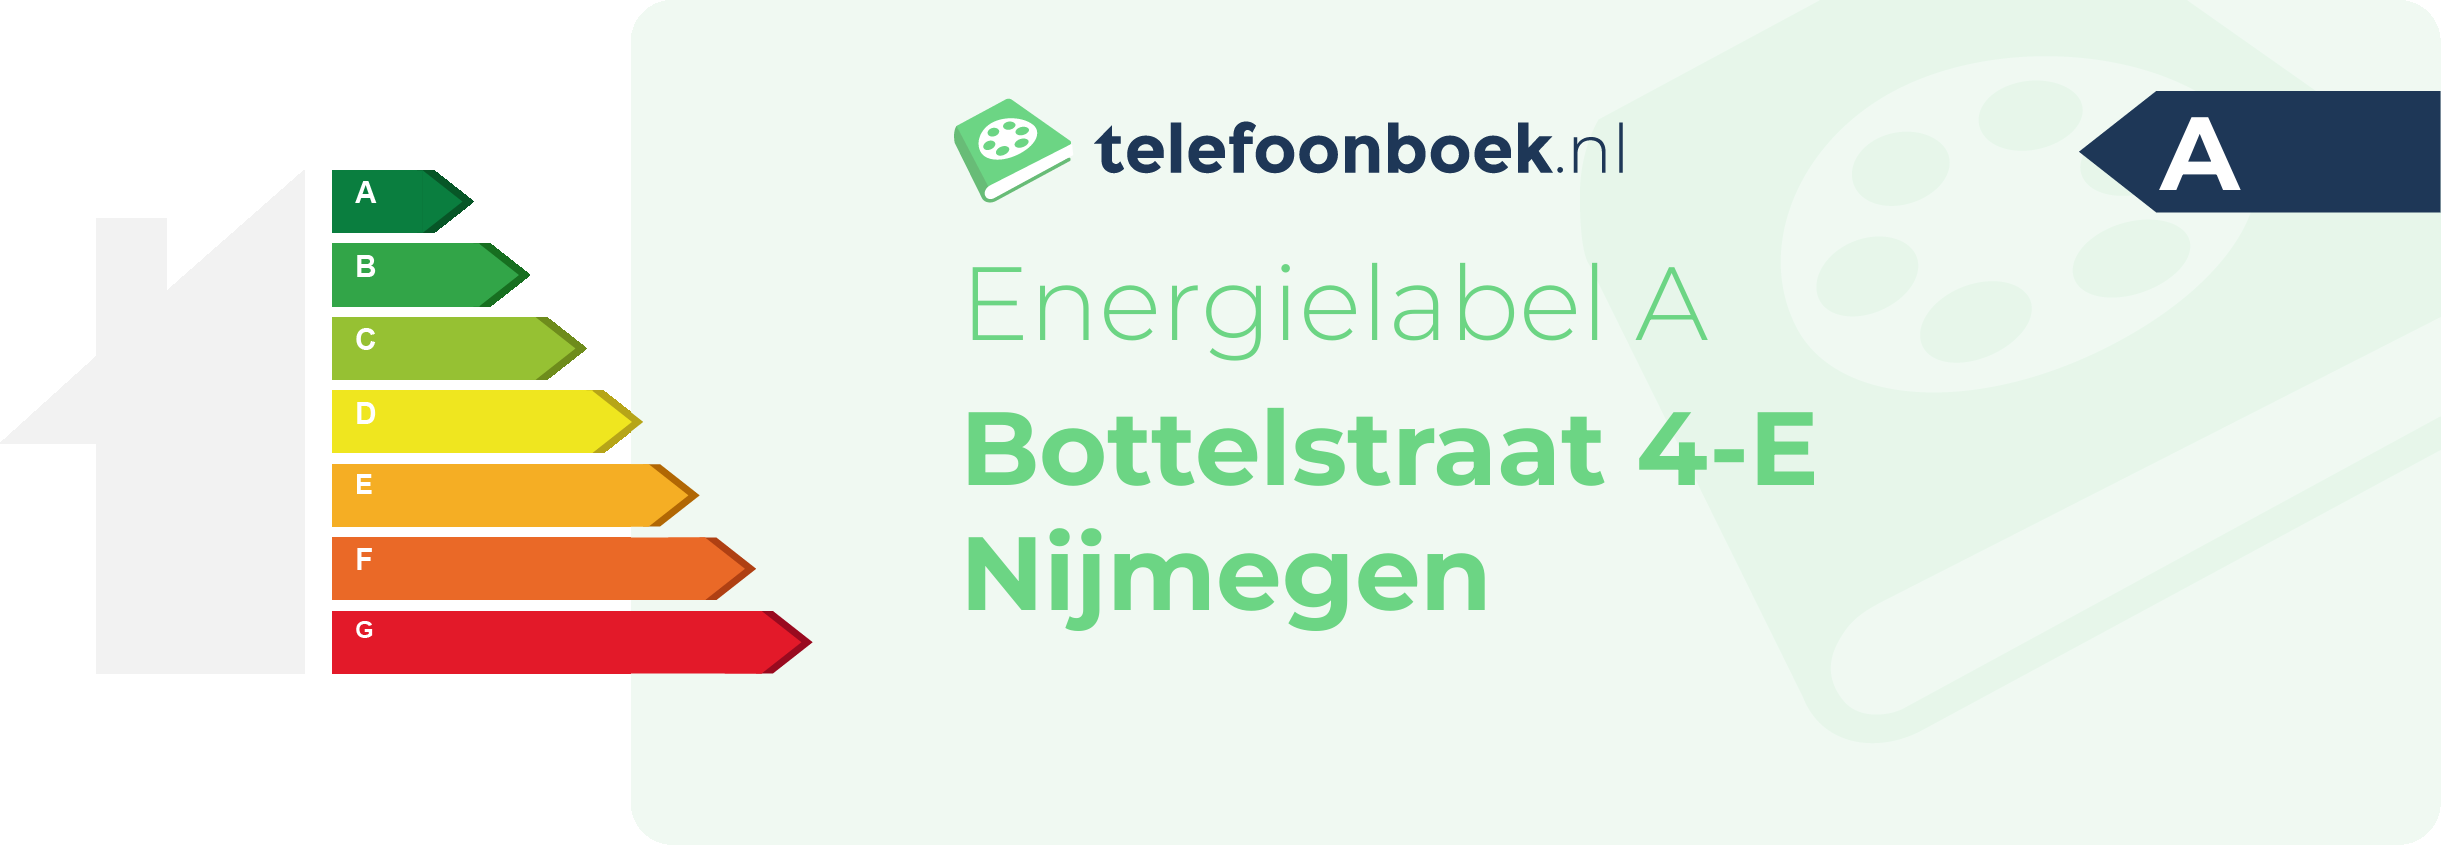 Energielabel Bottelstraat 4-E Nijmegen